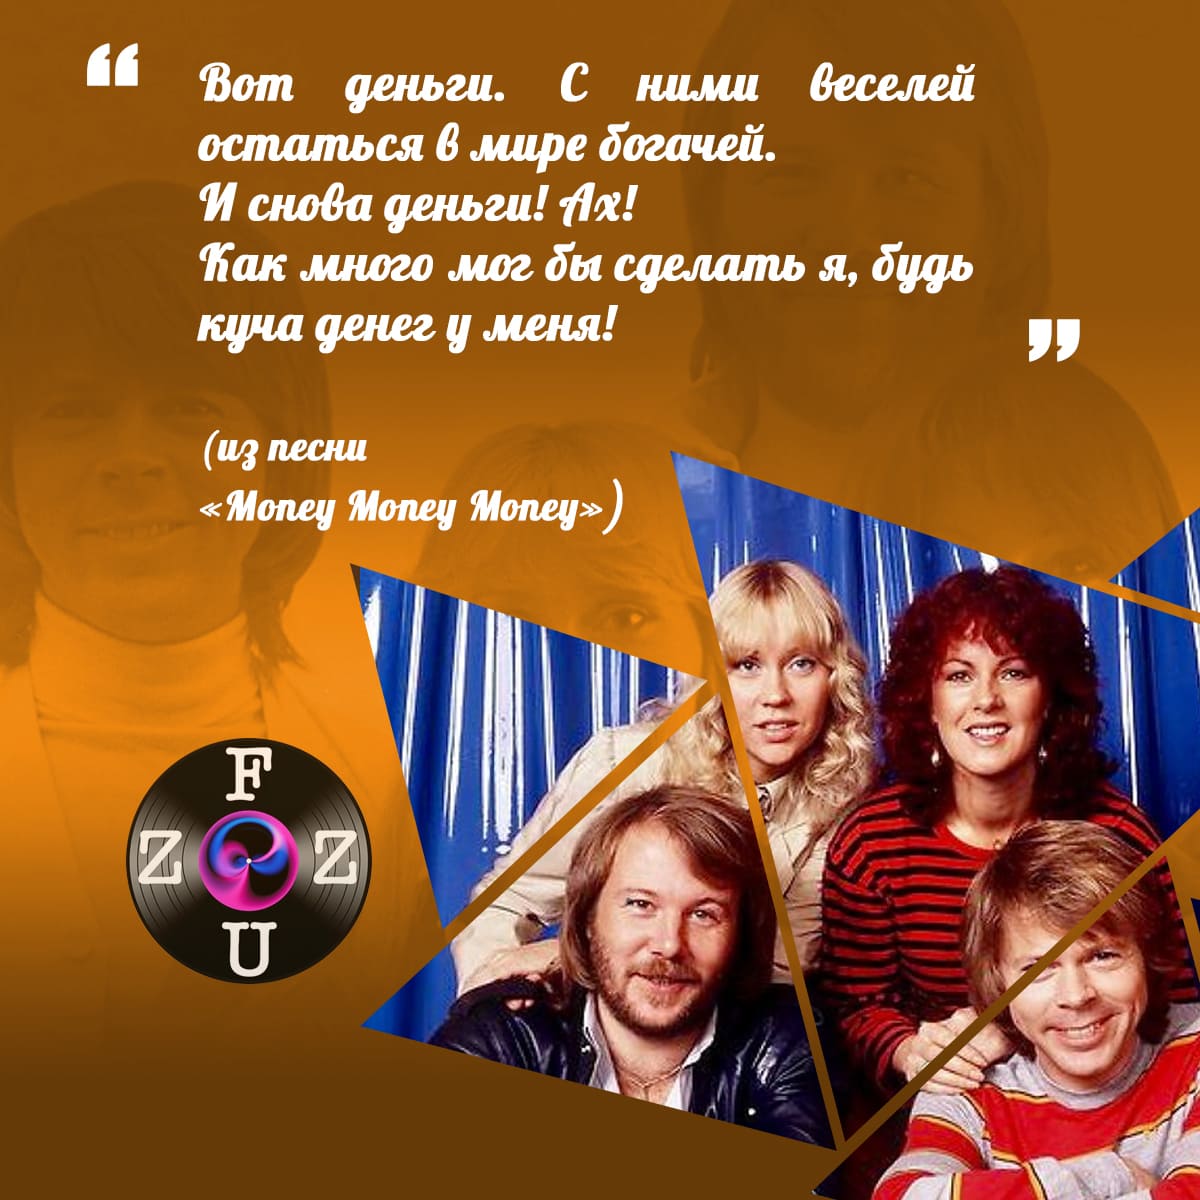 Citações de músicas da ABBA...